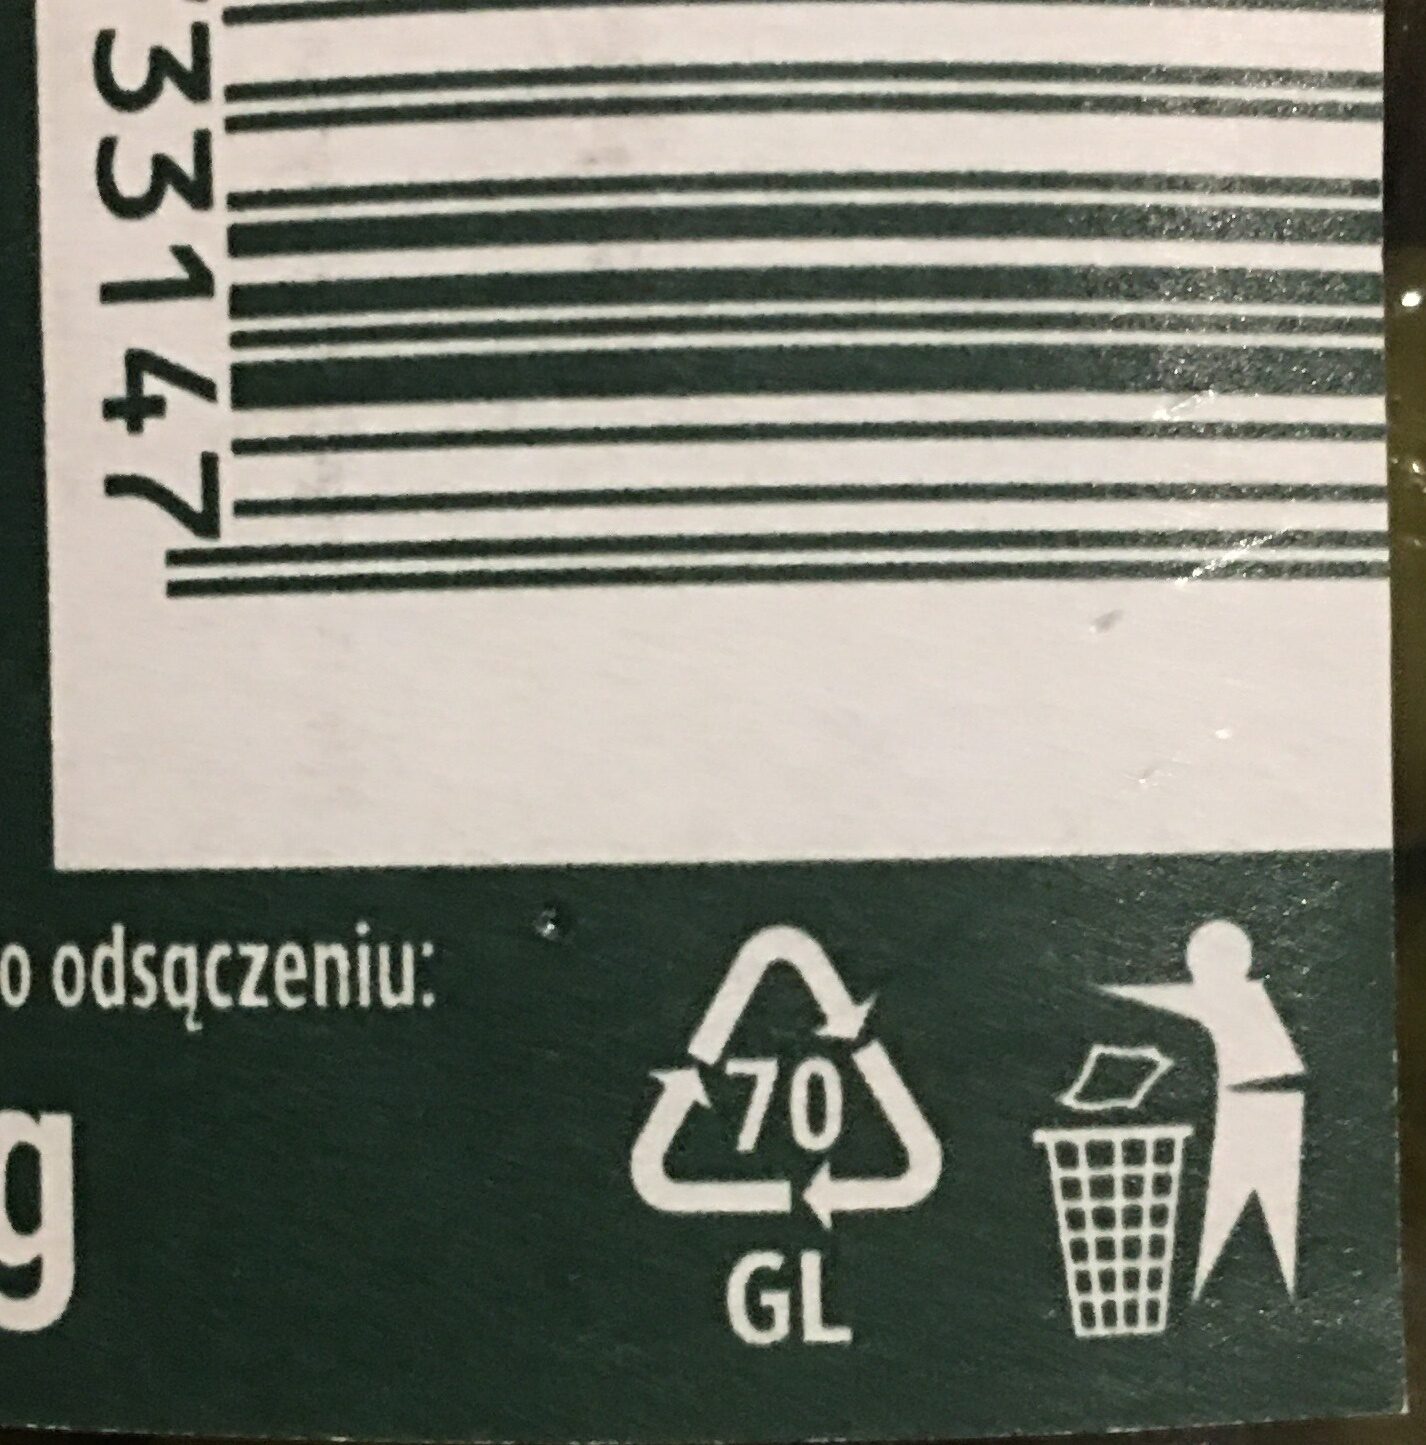 Ogórki konserwowe z chili - Instrukcje dotyczące recyklingu i / lub informacje na temat opakowania